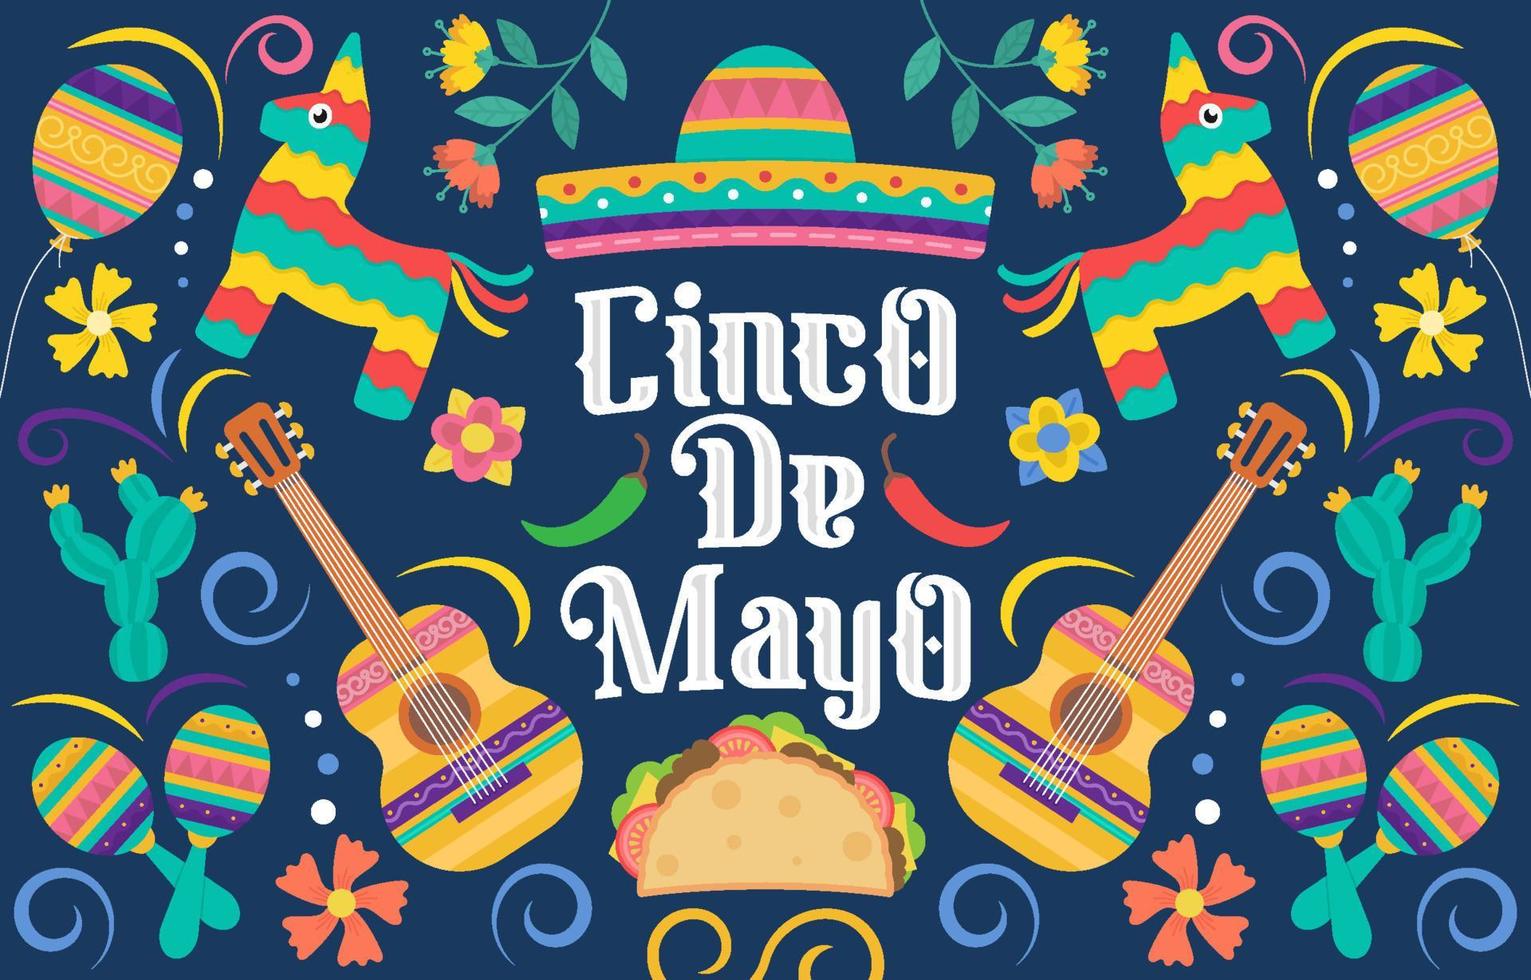 Cinco De Mayo Festival Background vector